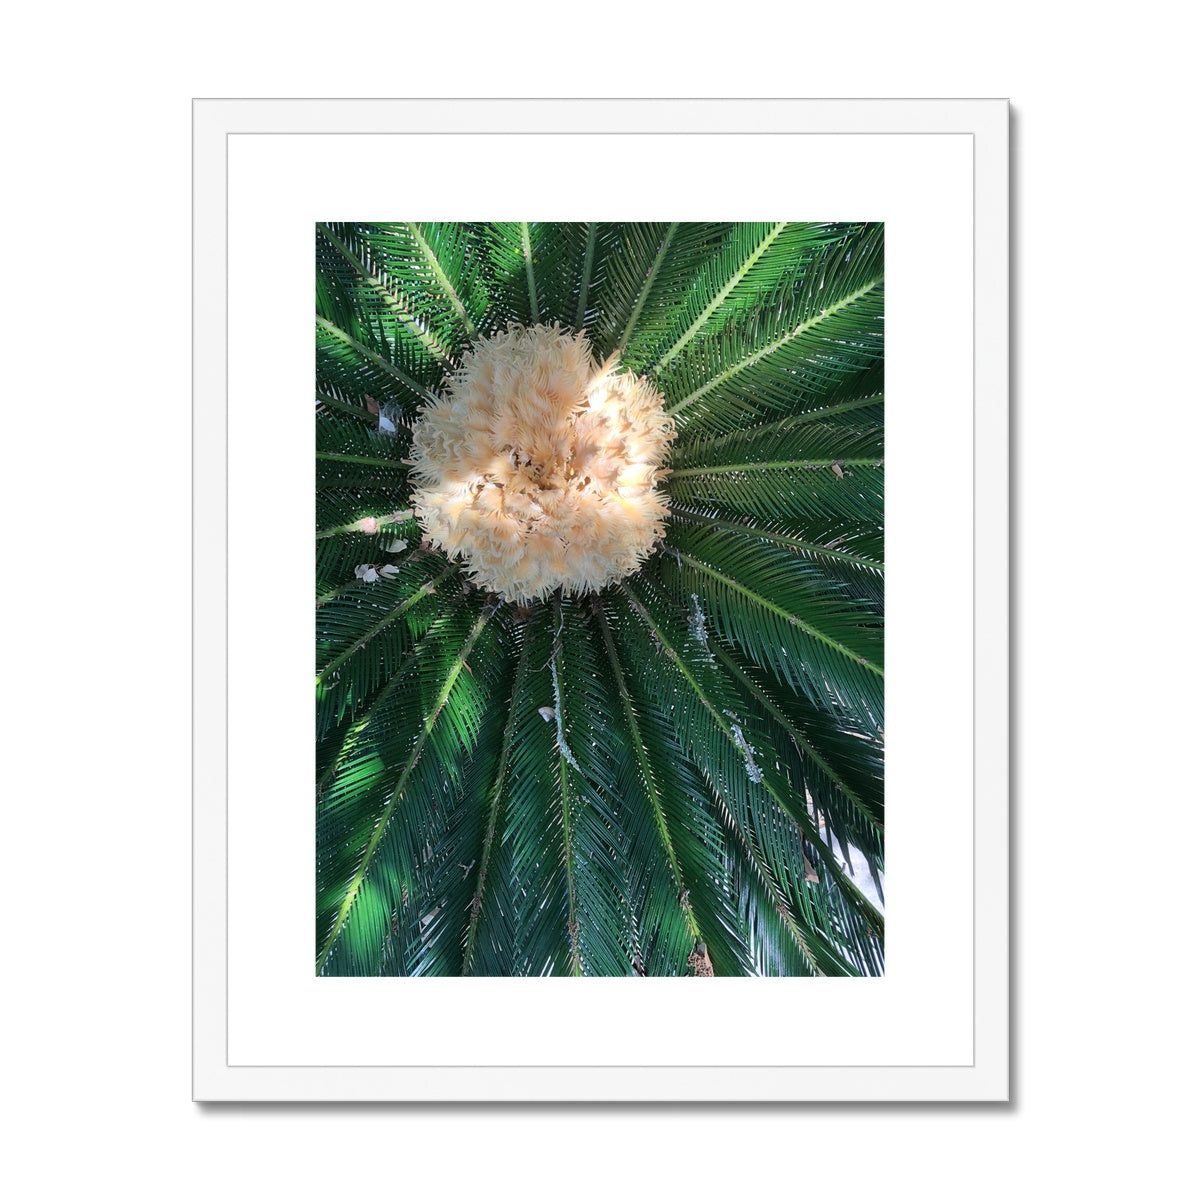 Sago Palm on Sunbelt Framed & Mounted Print